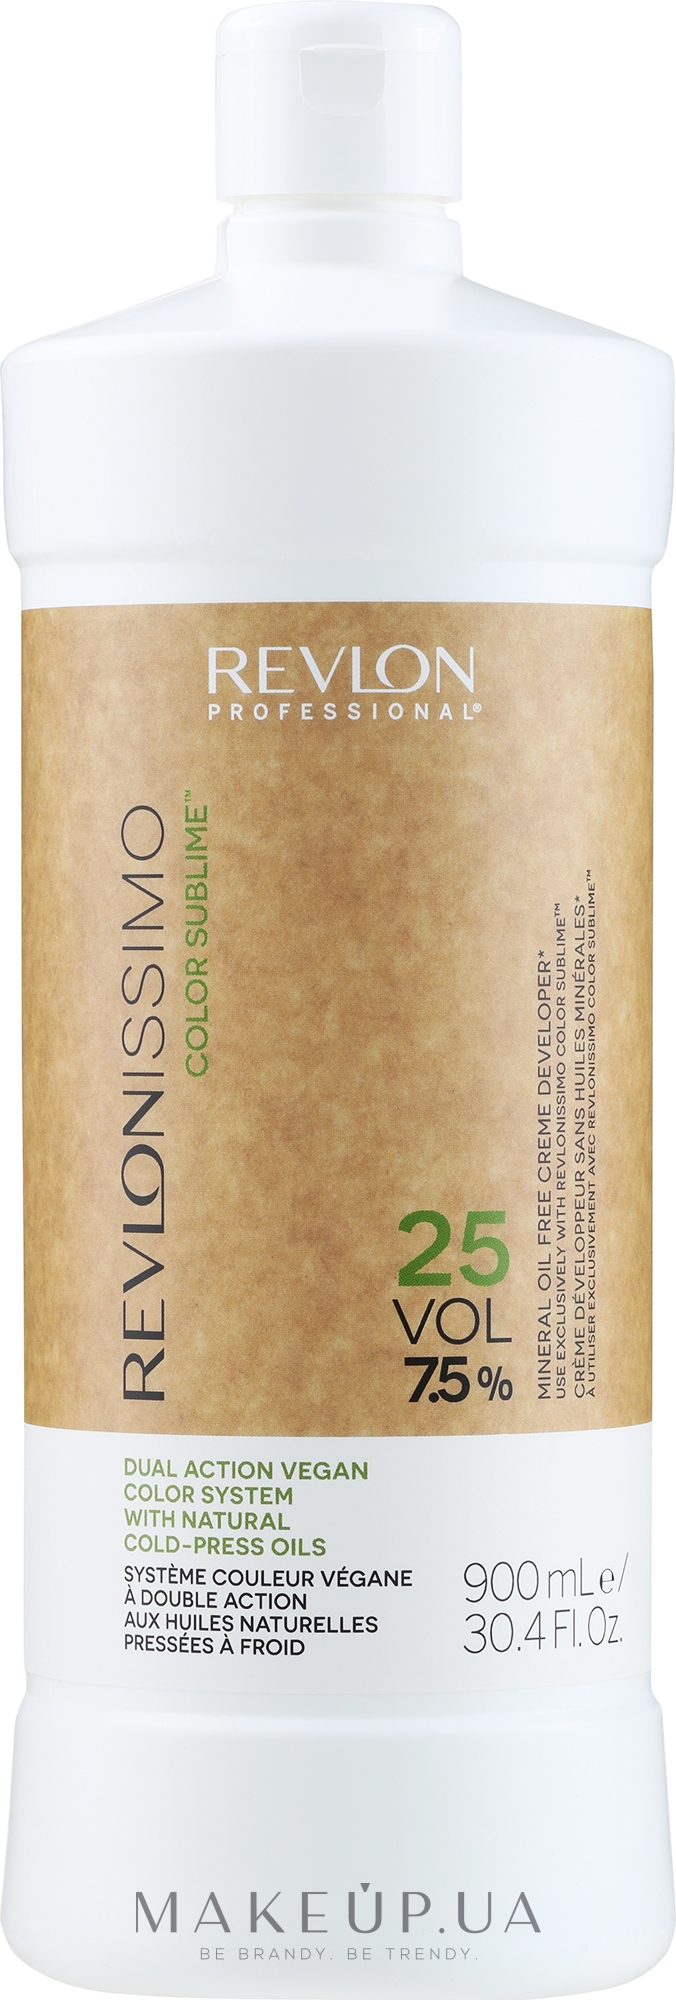 Кремообразный окислитель 7,5 % - Revlon Professional Revlonissimo Color Sublime Cream Oil Developer 25Vol — фото 900ml